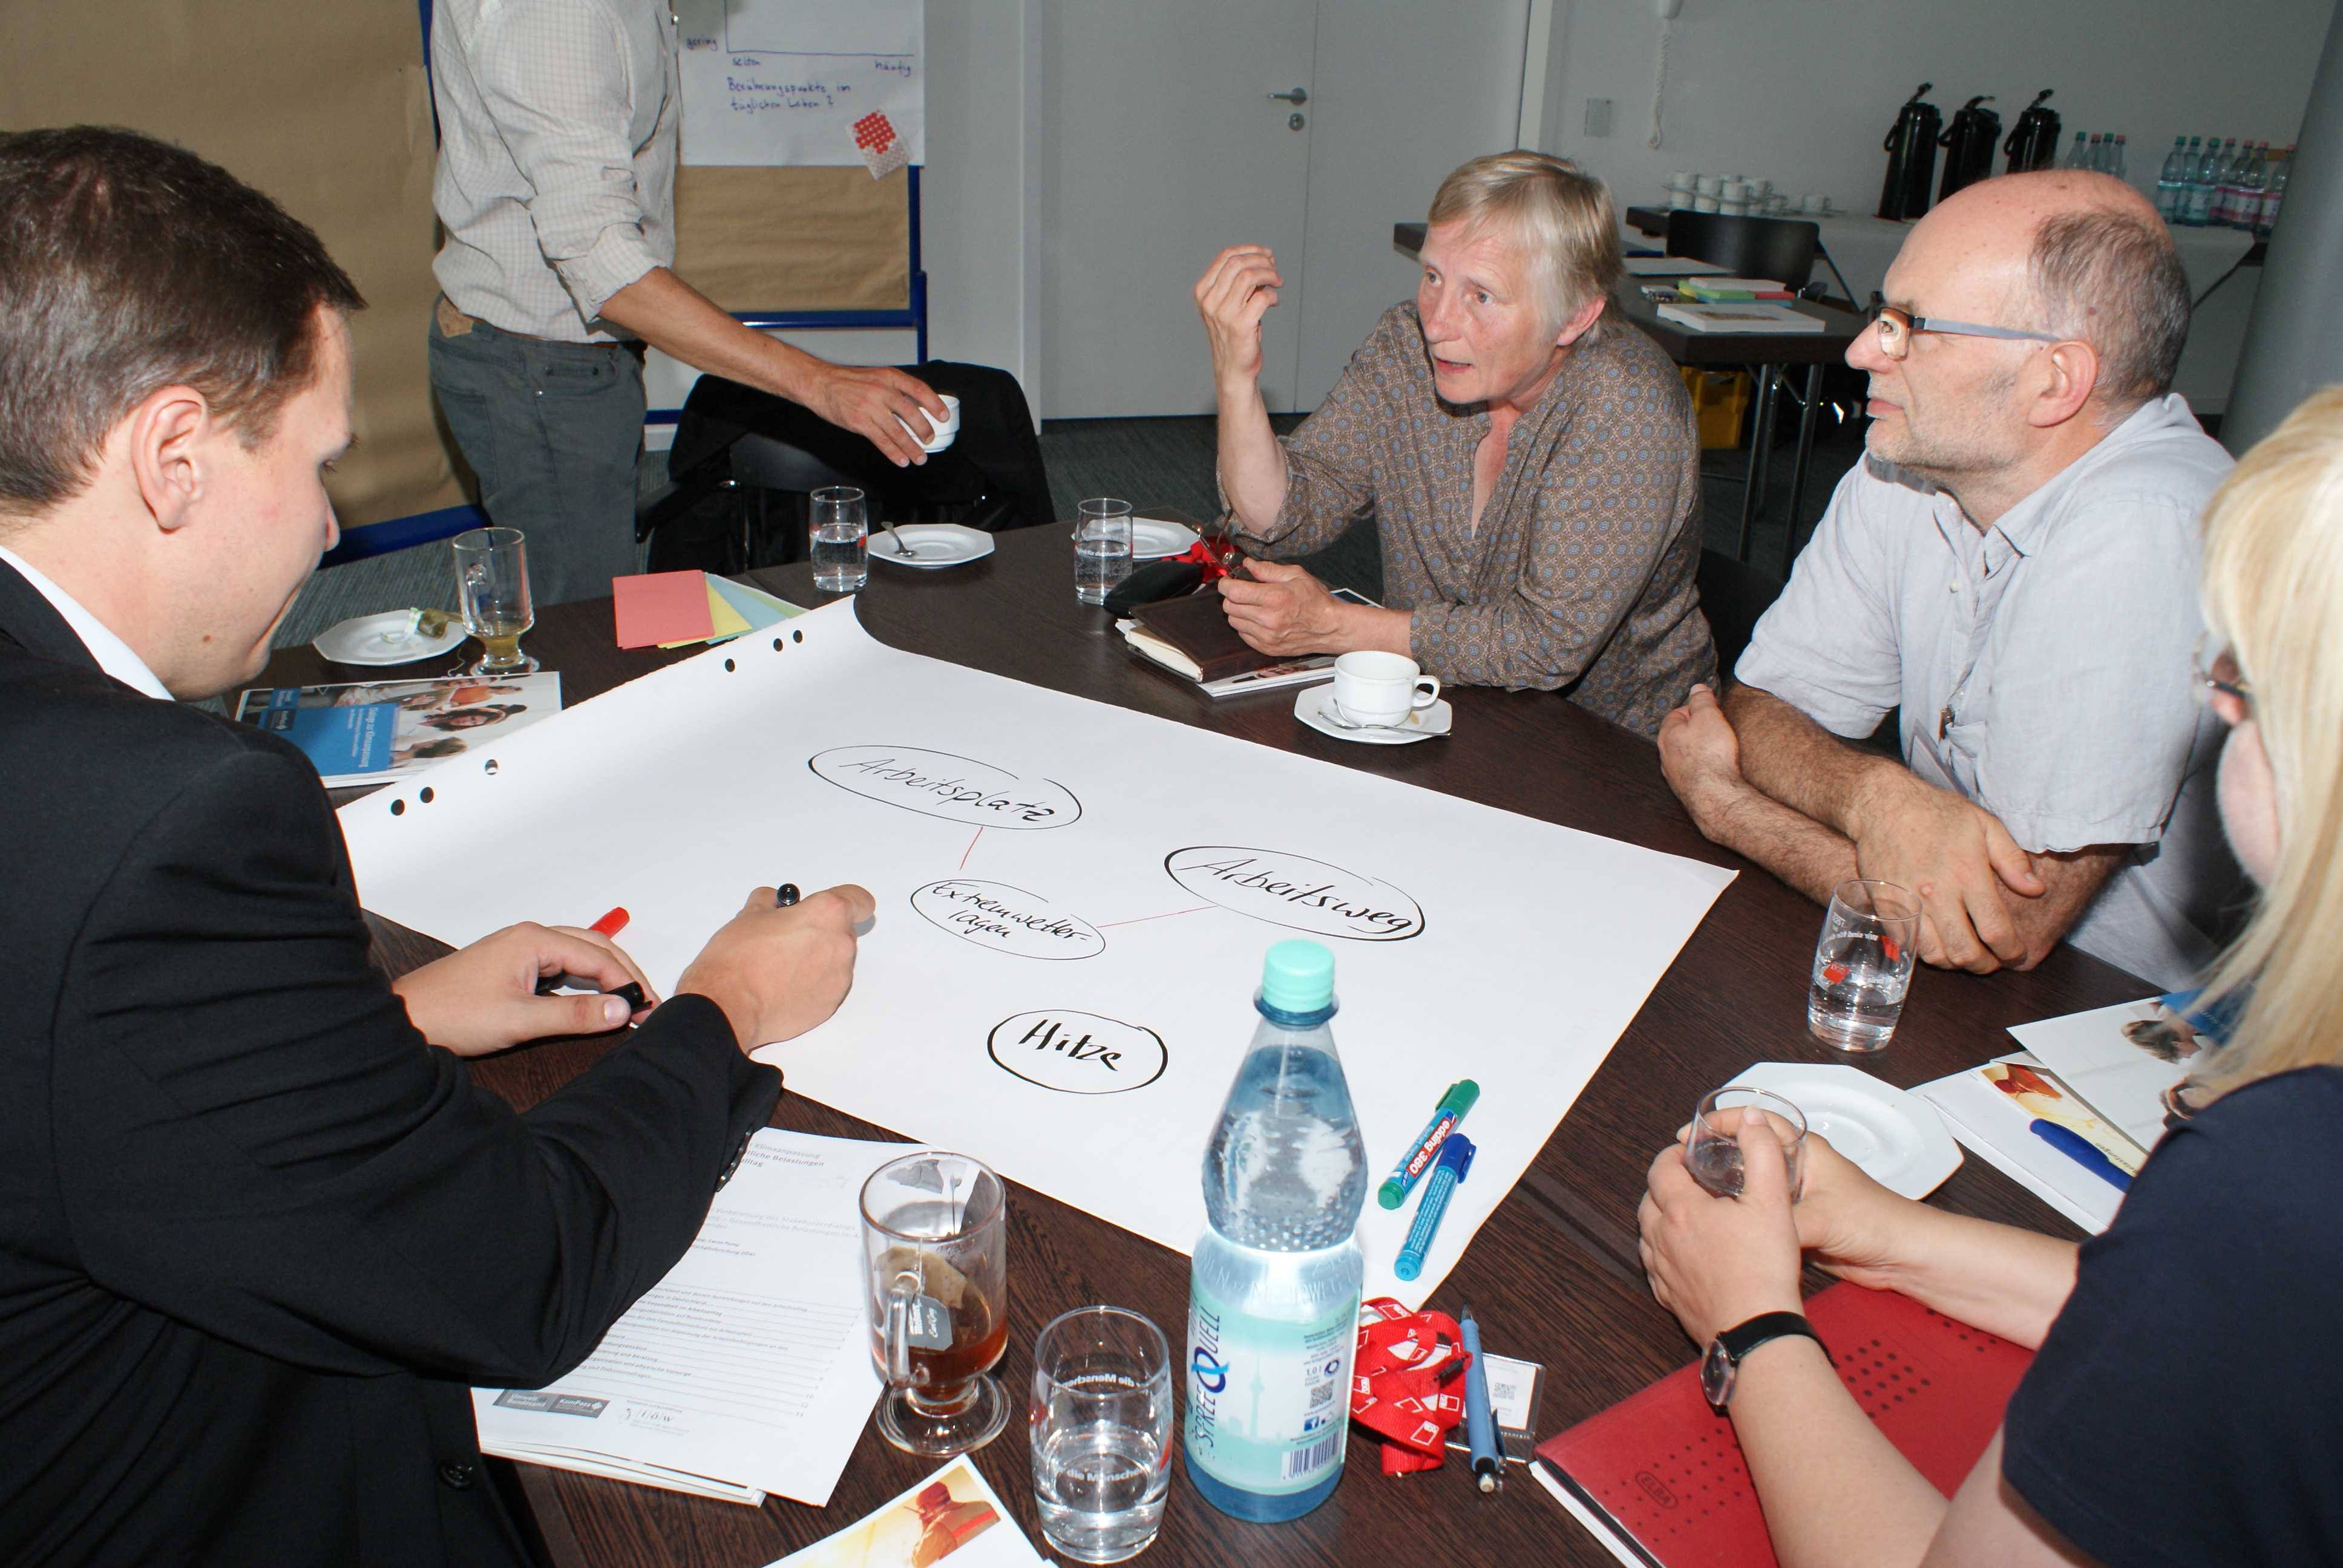 Teilnehmer sind am Gruppenarbeitstisch und diskutieren miteinander. Ein Teilnehmer schreibt Diskussionsergebnisse auf Posterpapier, welches auf dem Tisch liegt.